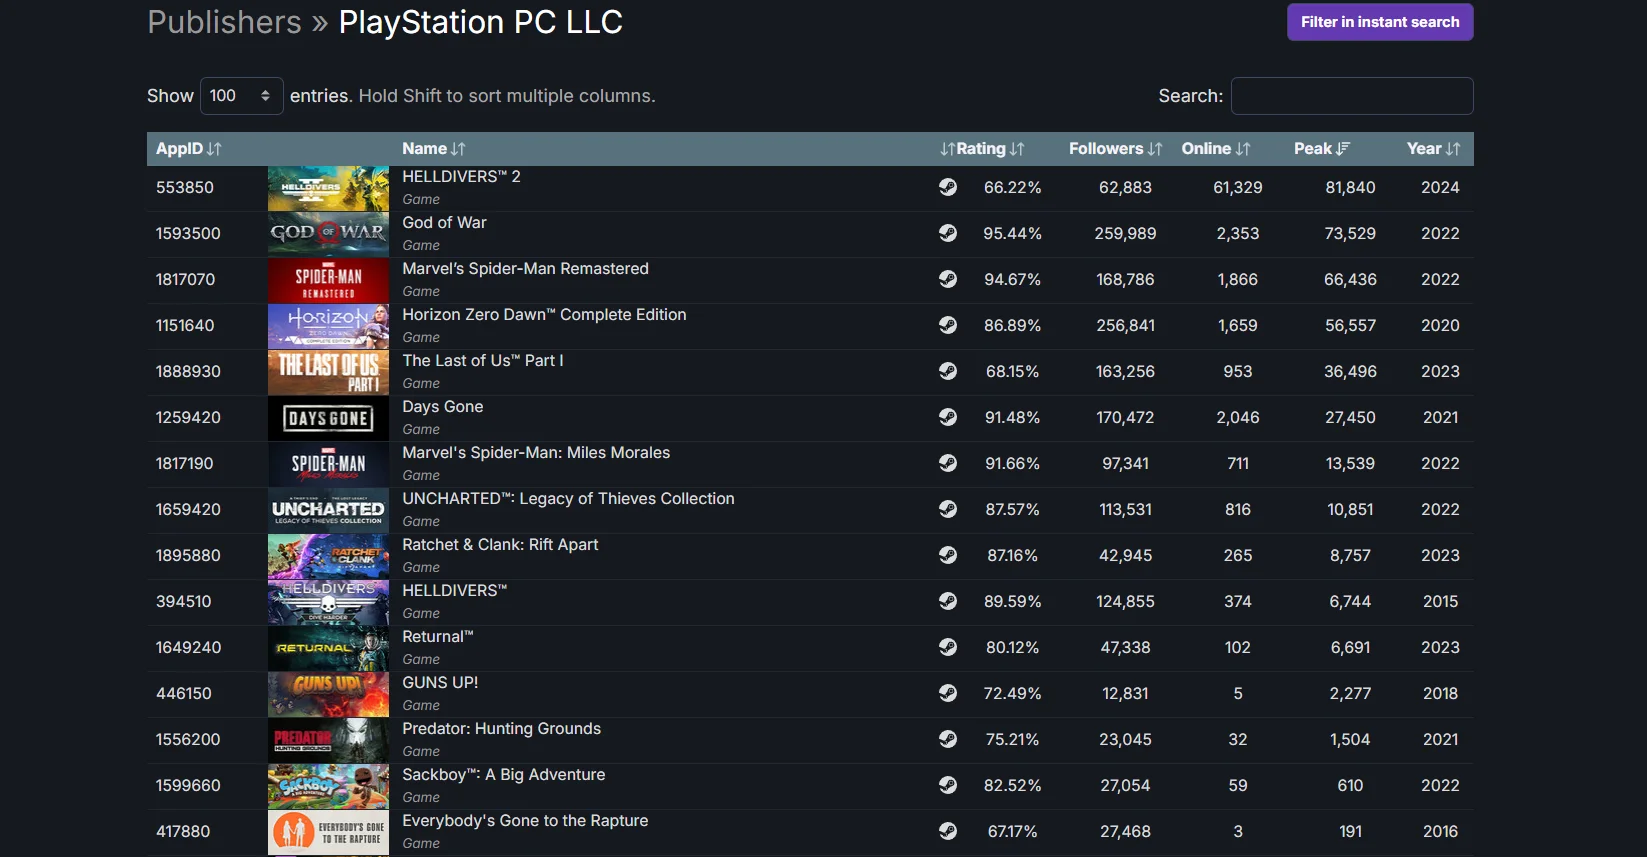 Helldivers 2 обошла God of War и стала самым успешным релизом Sony в Steam - фото 1